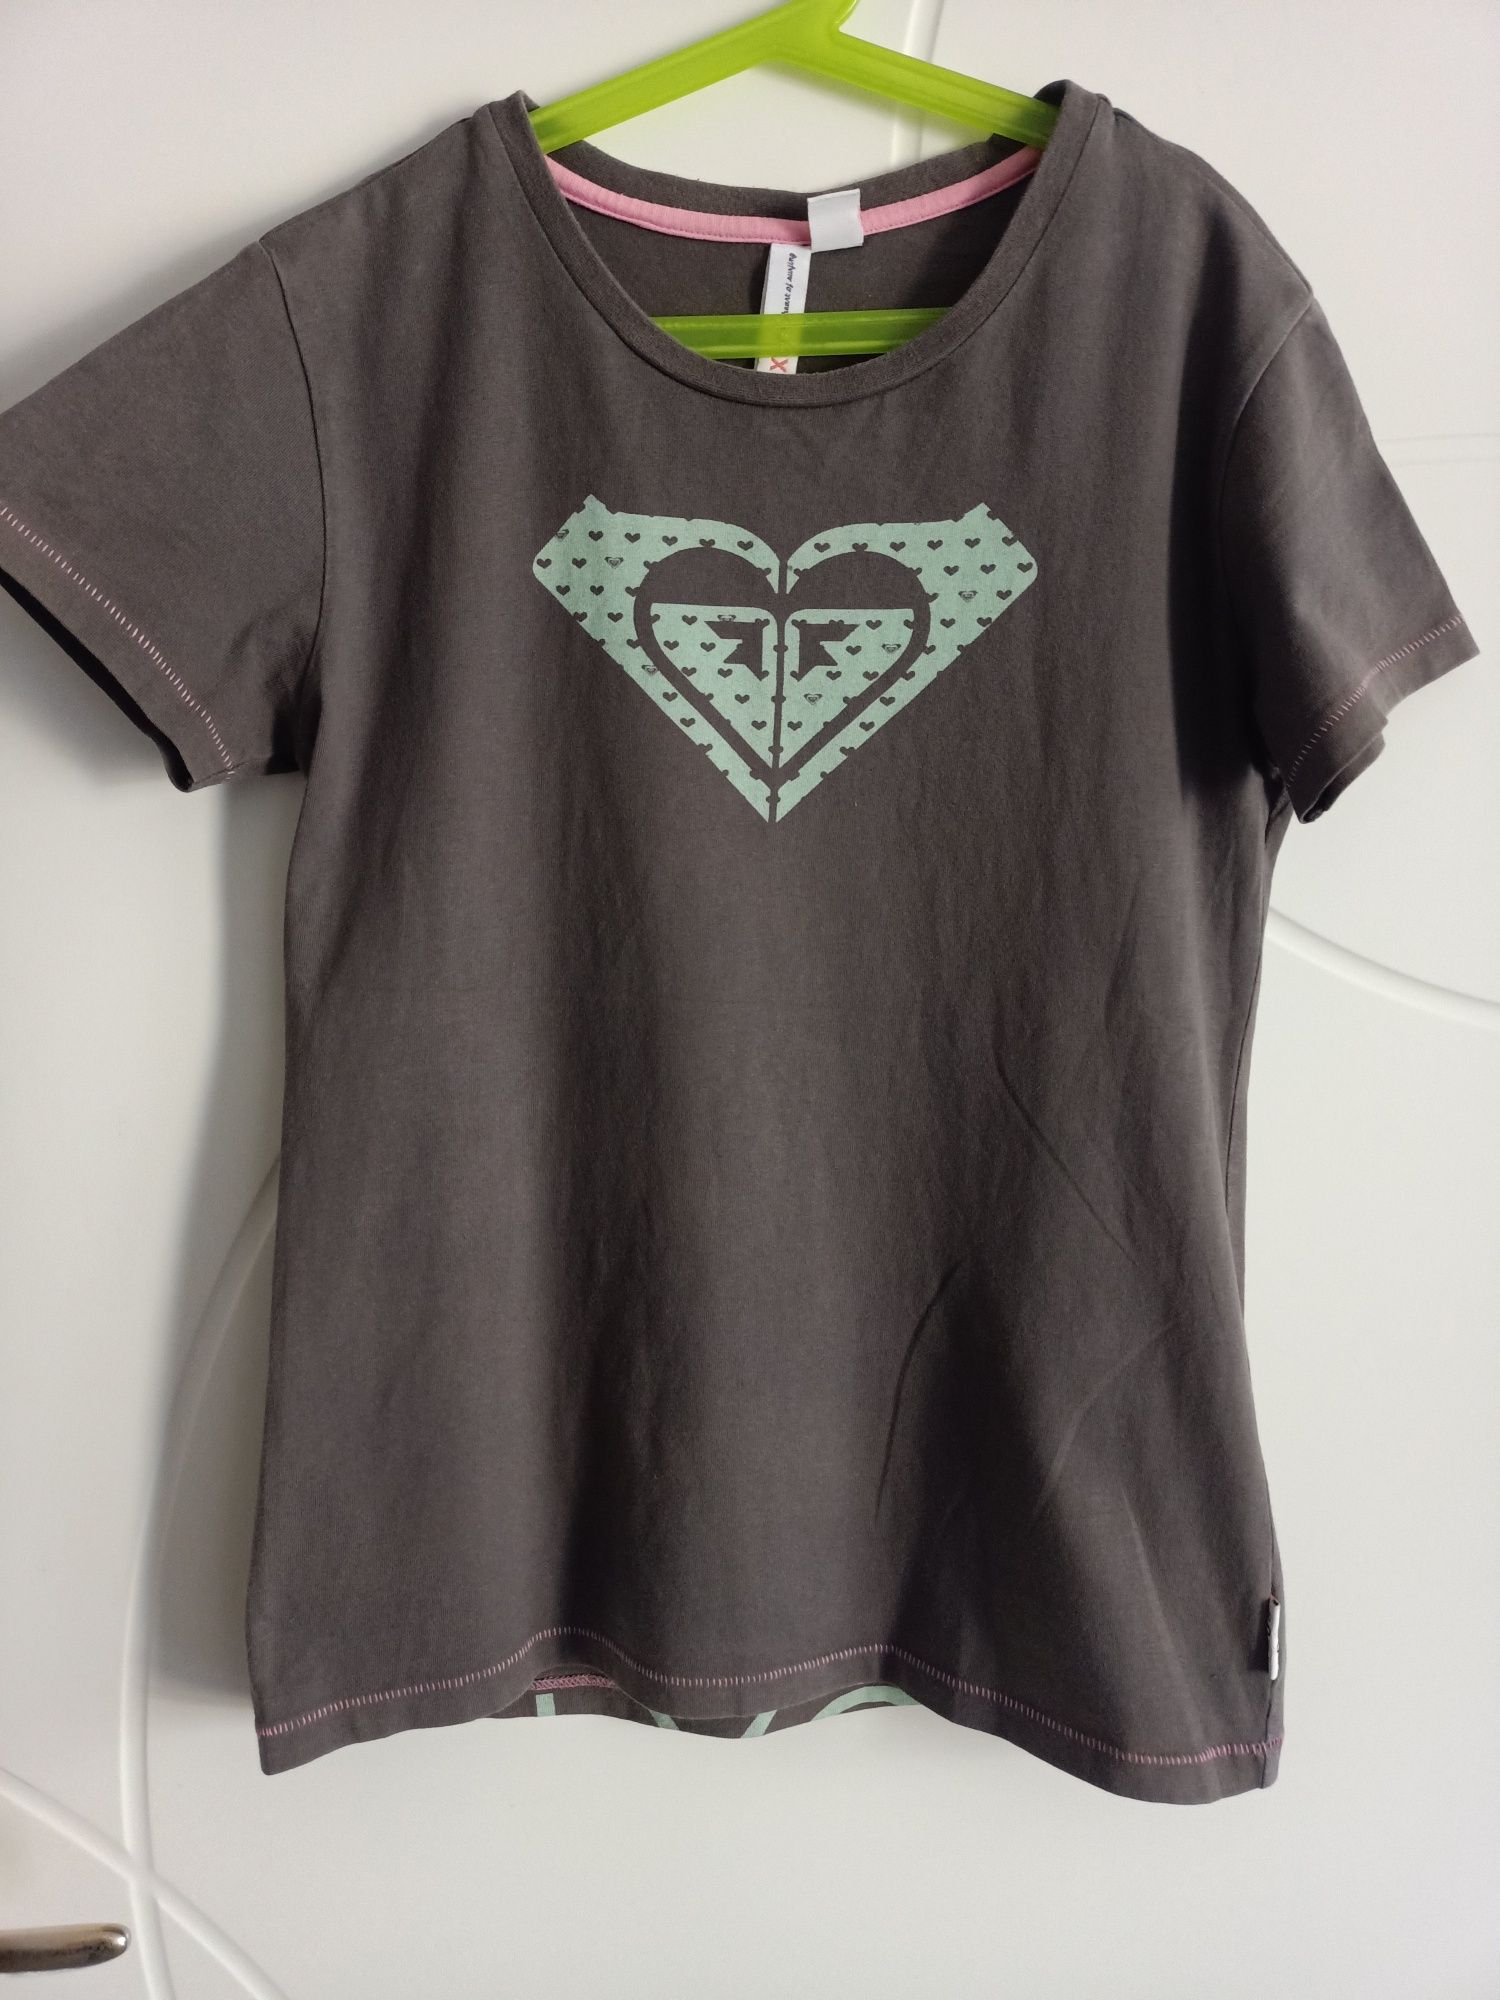 ROXY koszulka t-shirt rozmiar 152/12 lat bluzka bluzeczka